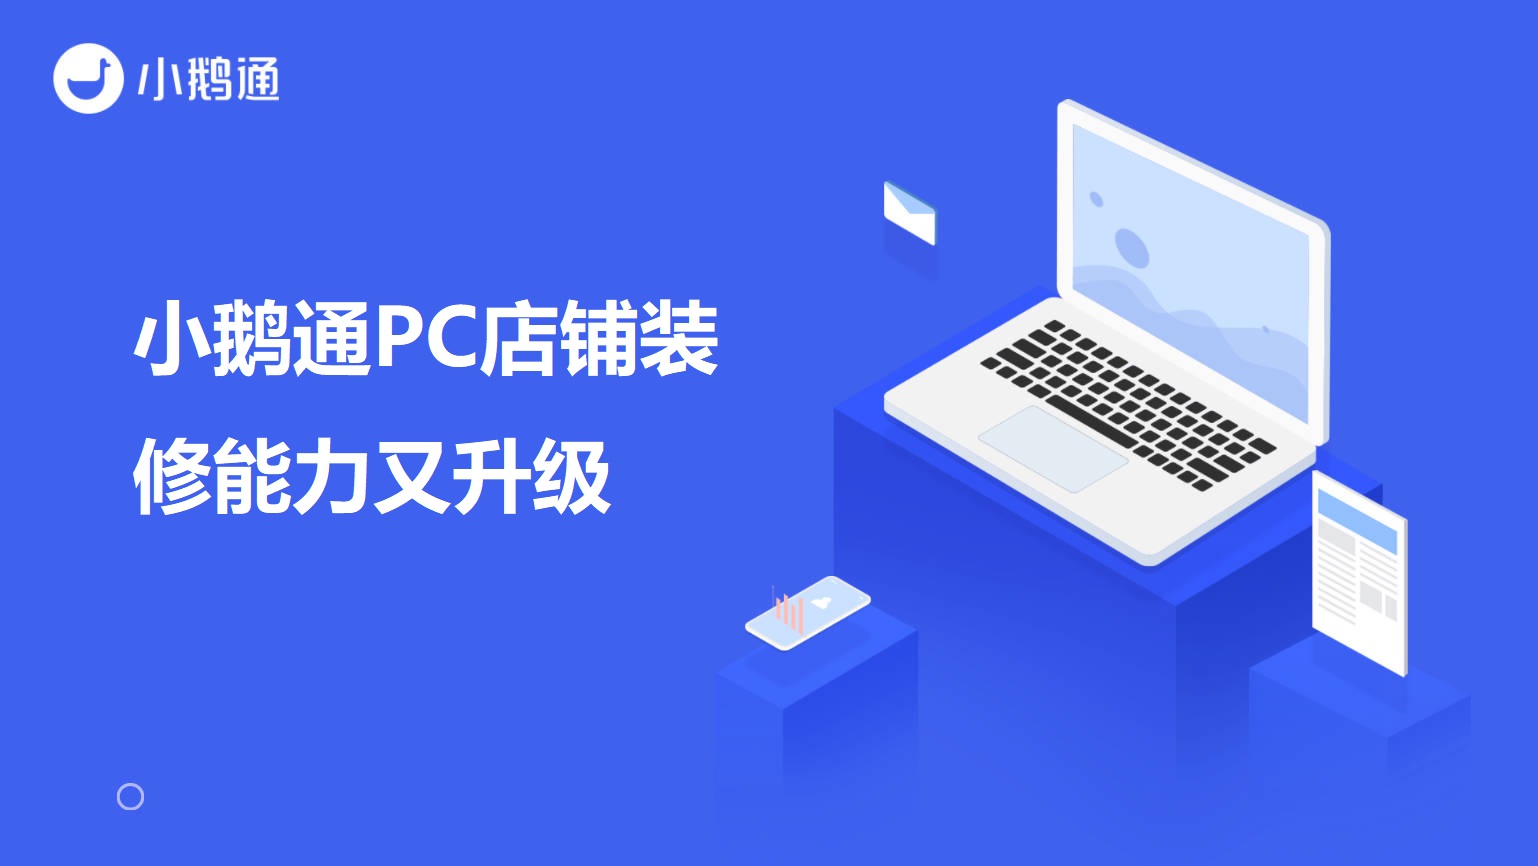 广东小鹅通PC店铺装修能力又升级啦！自定义背景色、课程分类、直播等组件优化！